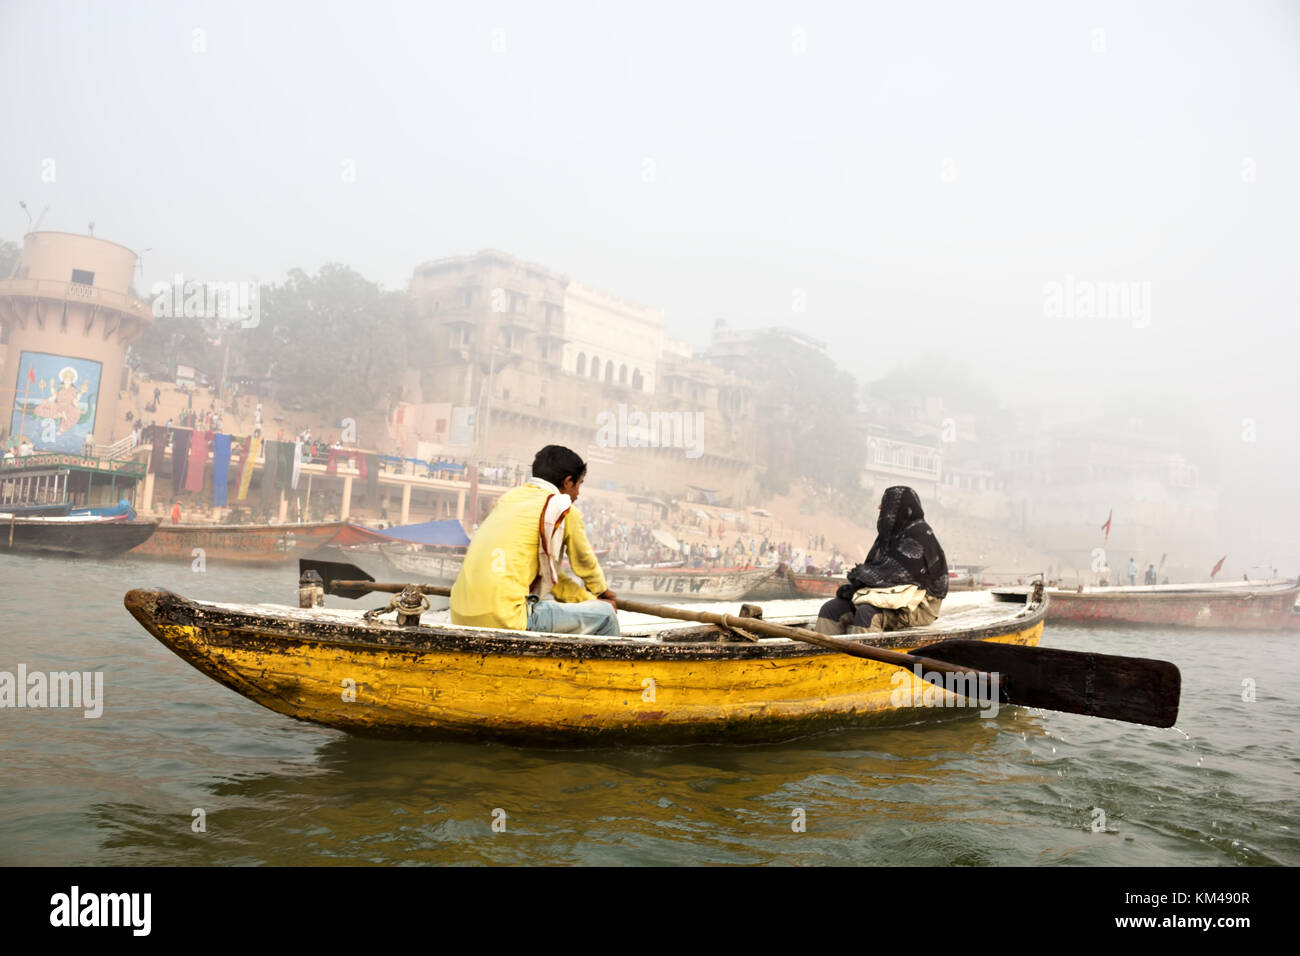 Un touriste étranger en profitant de la vue des ghats par le fleuve saint Ganges randonnée sur un bateau de ligne en bois, Varanasi, Benares, kashi, Inde Banque D'Images